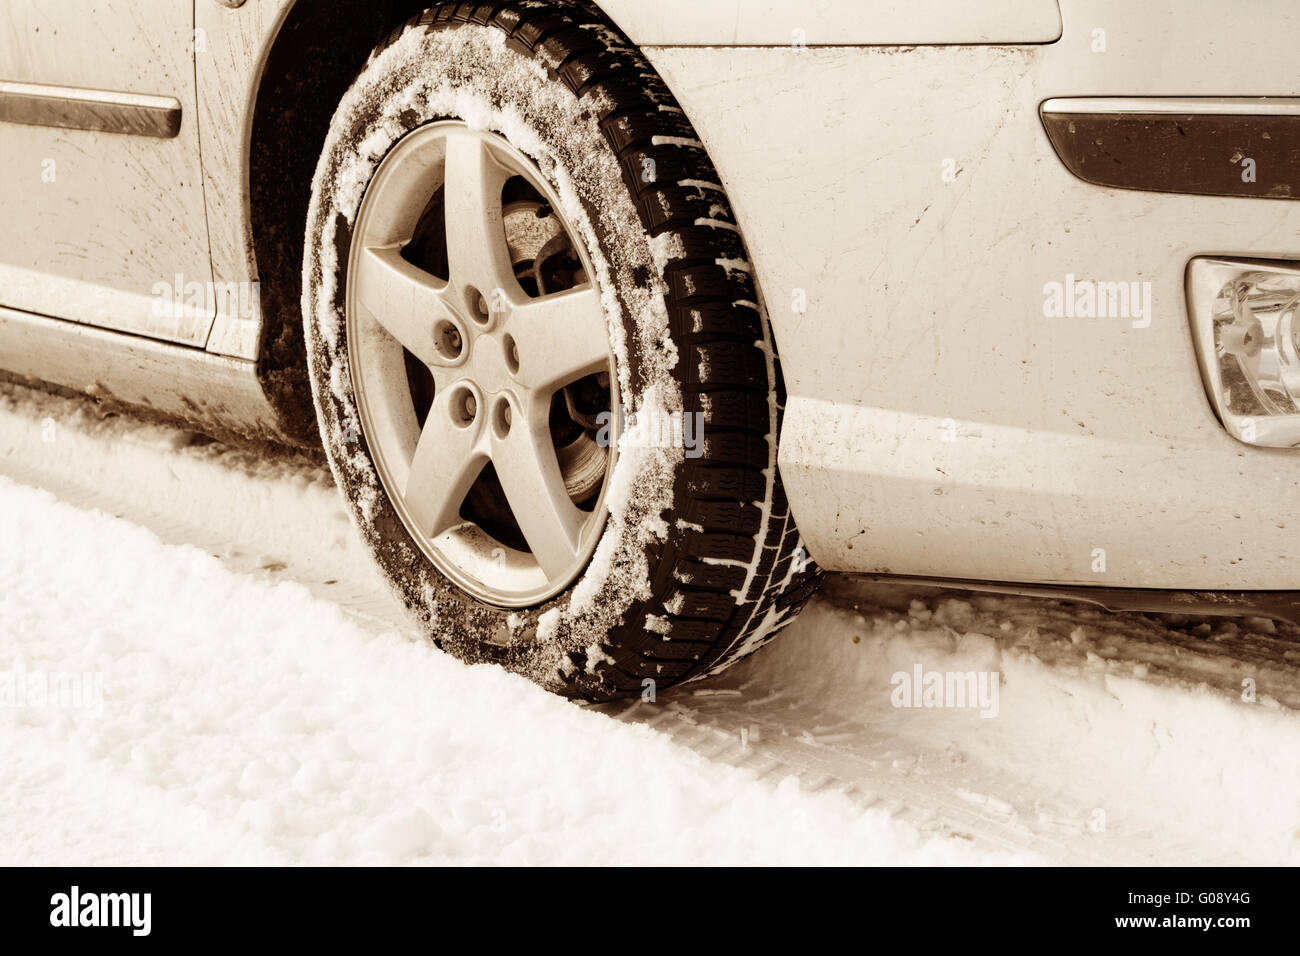 Nahaufnahme von Pkw-Reifen auf einer verschneiten Straße - Sepia-Farbton Stockfoto